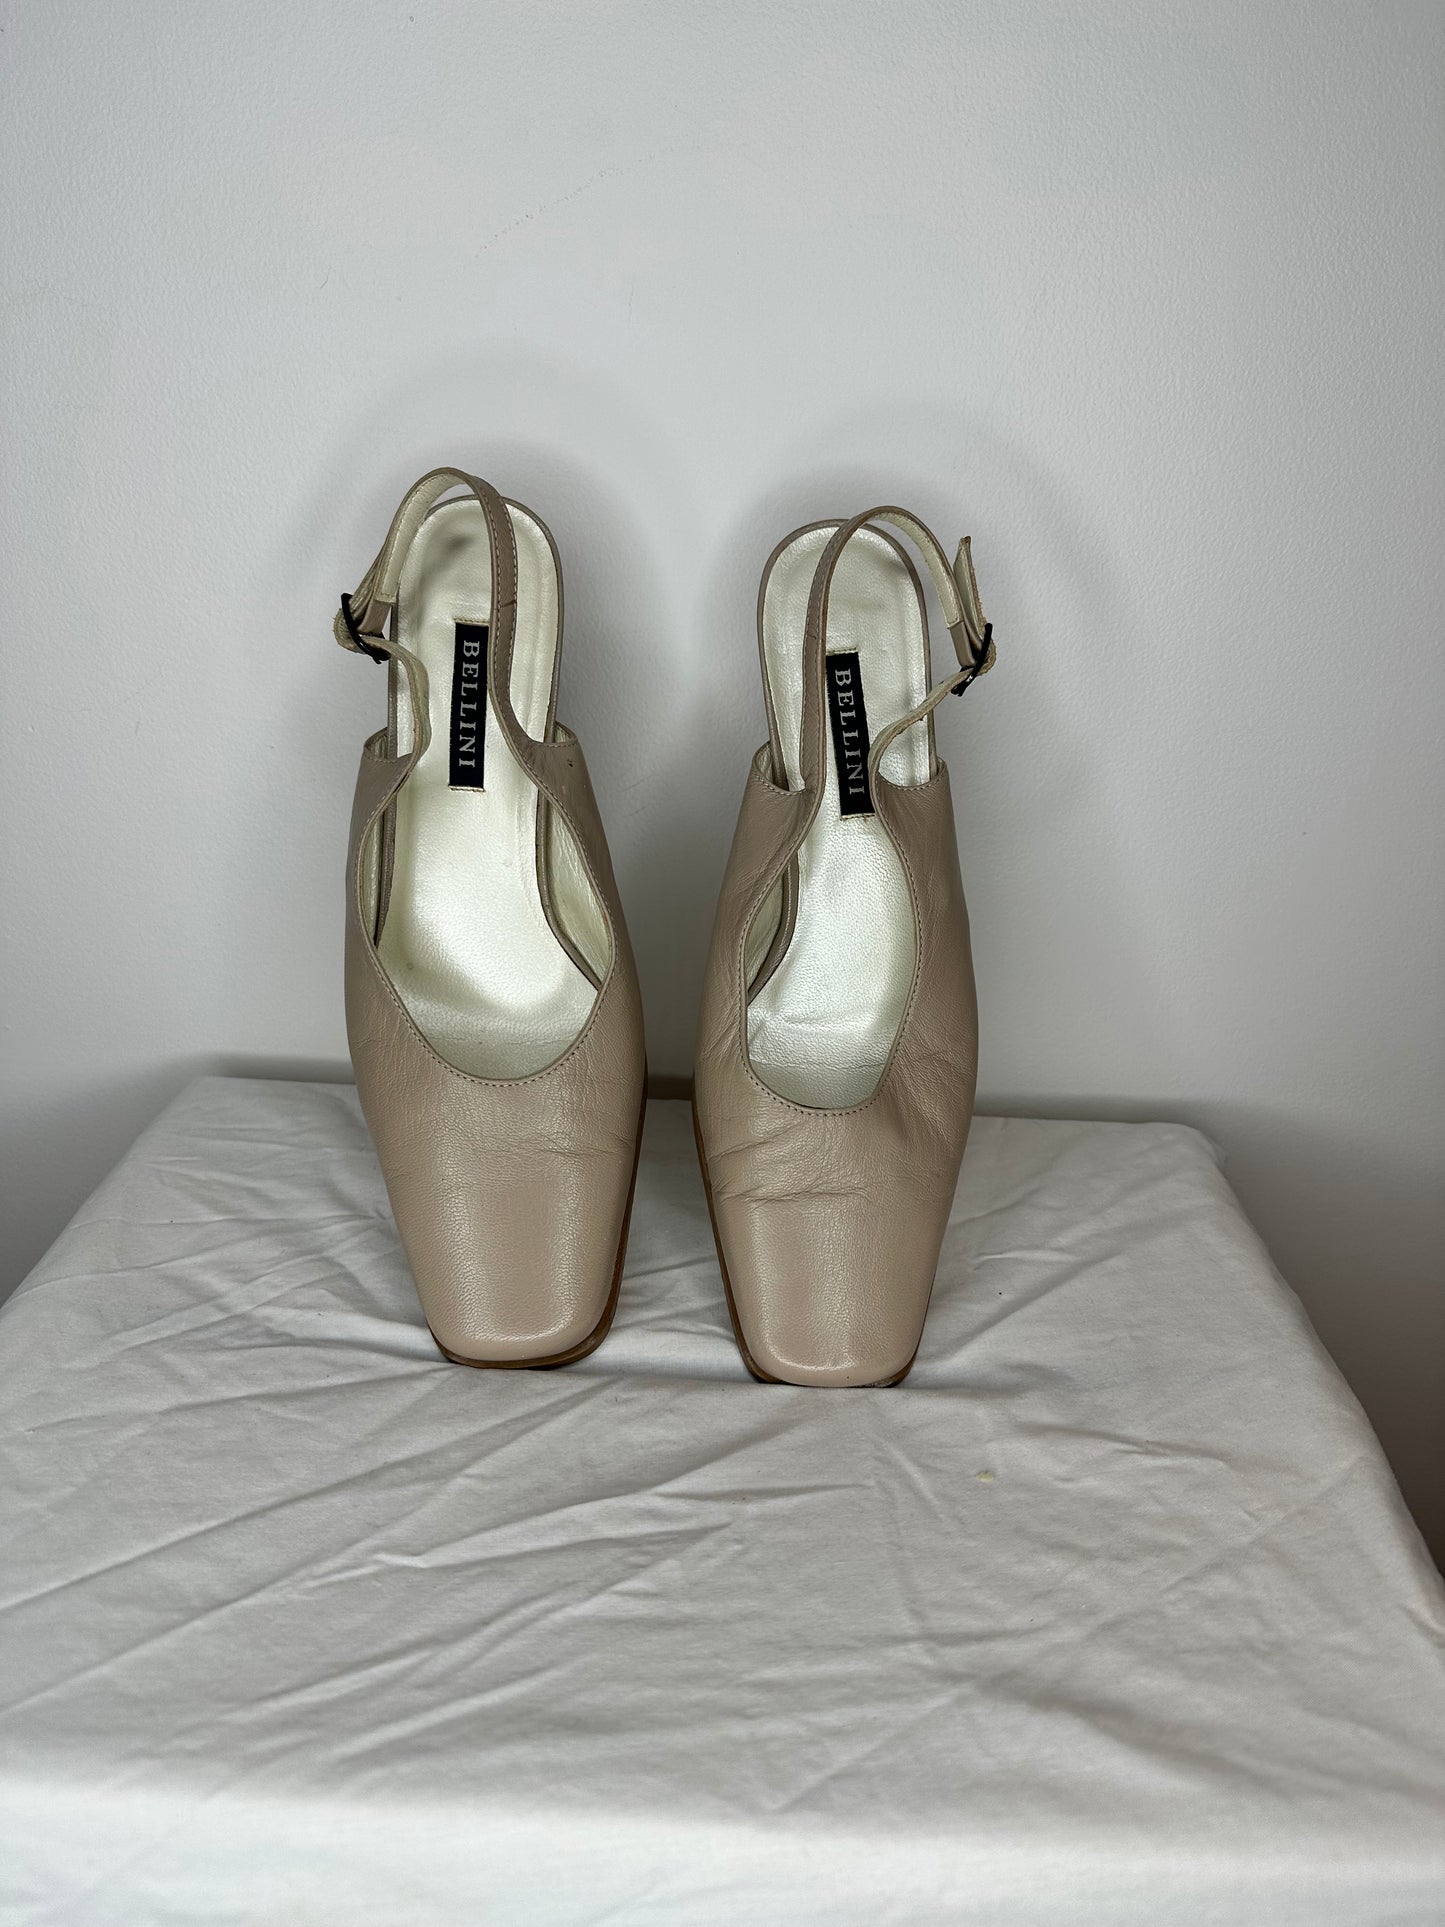 Vintage Bellini Sling Back Leather Heels (US 7 / EU 38)